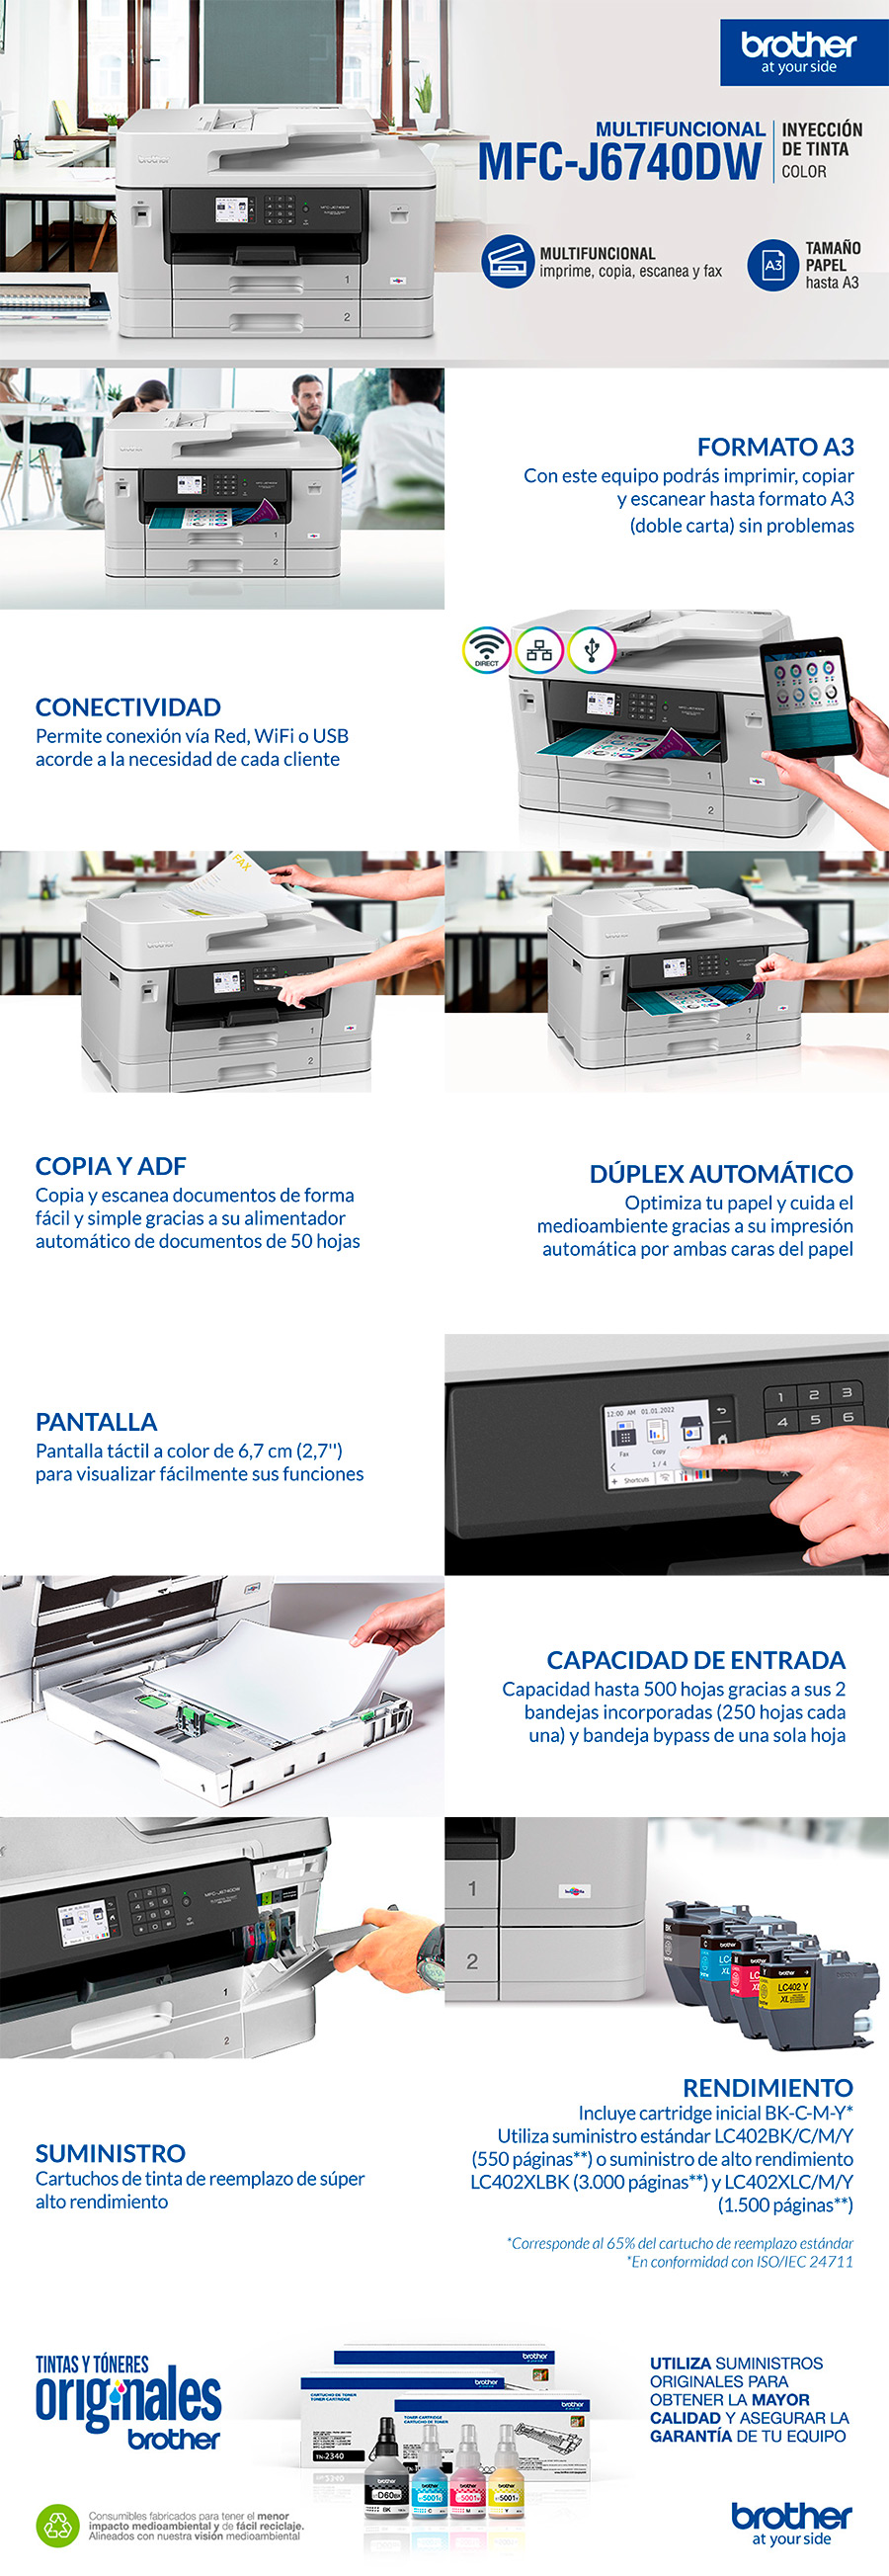 Impresora marca Brother con sistema de tinta Original y tinta